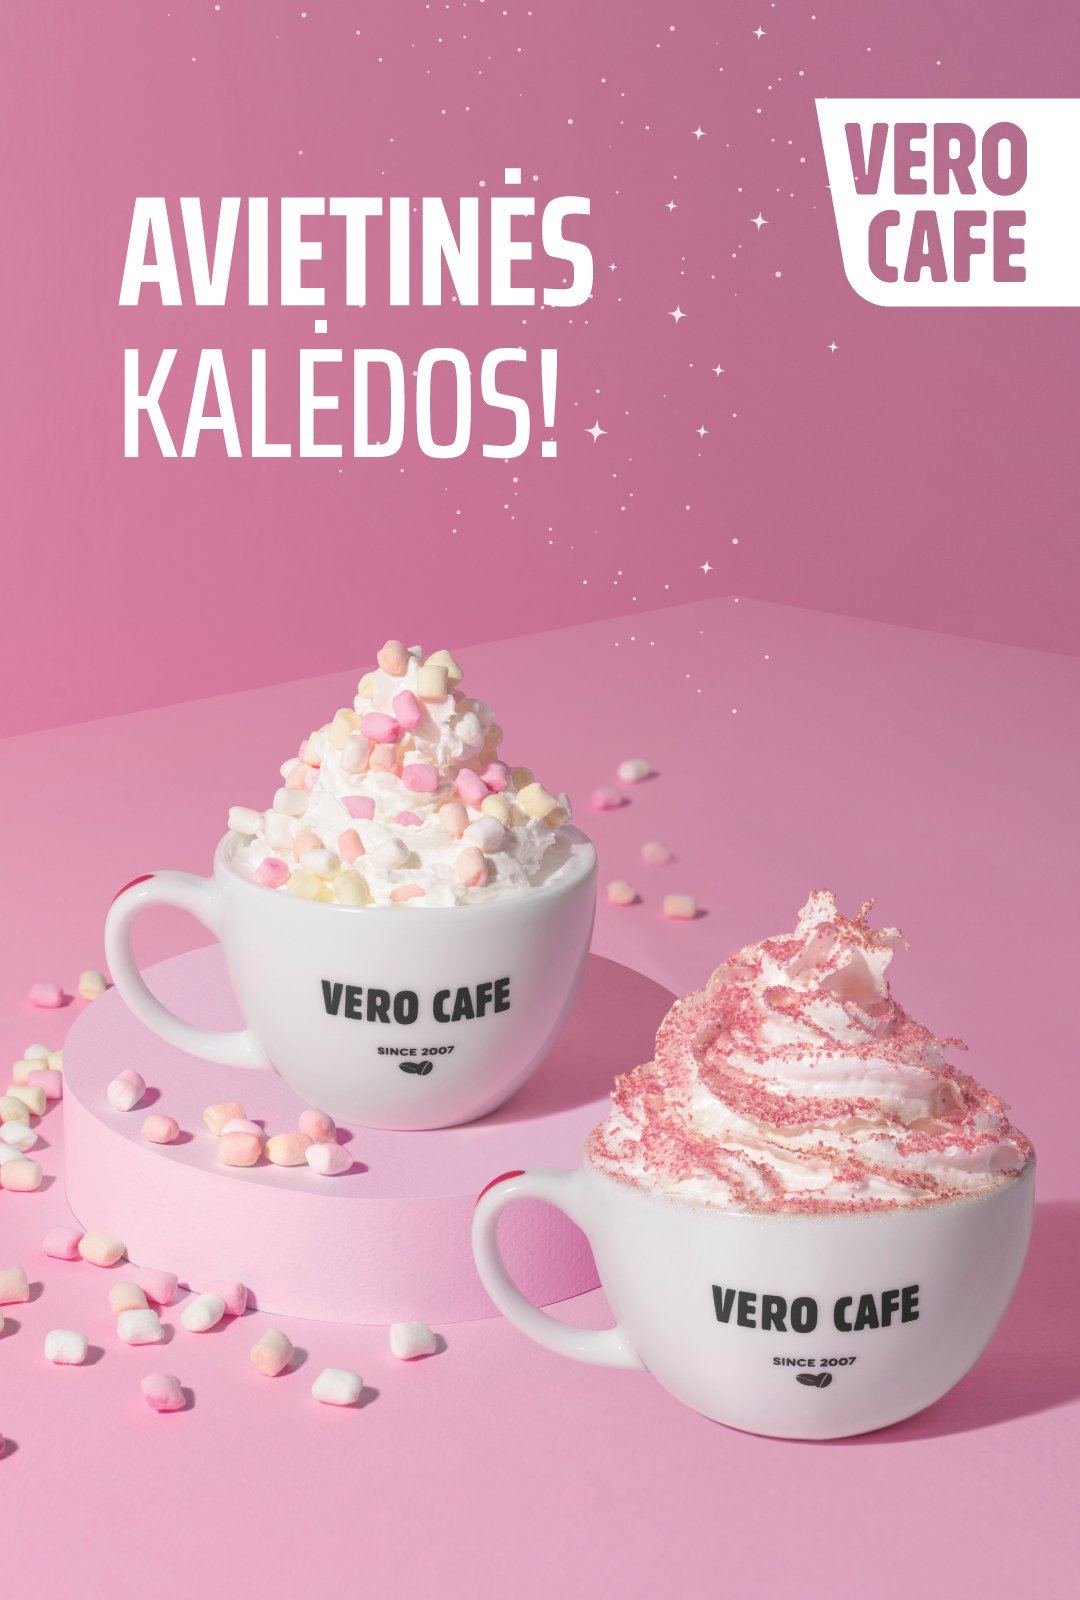 VERO CAFE linki jums rožinių švenčių! 💖